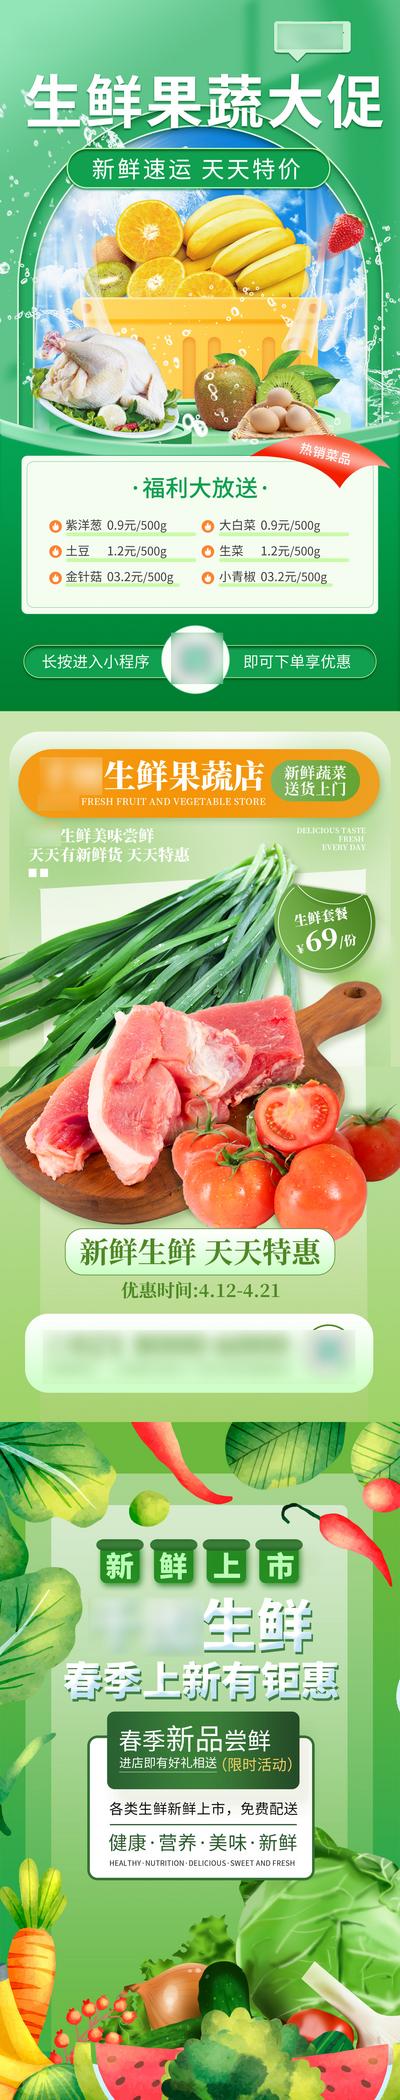 南门网 海报 生鲜 水果 蔬菜 食品 促销 宣传